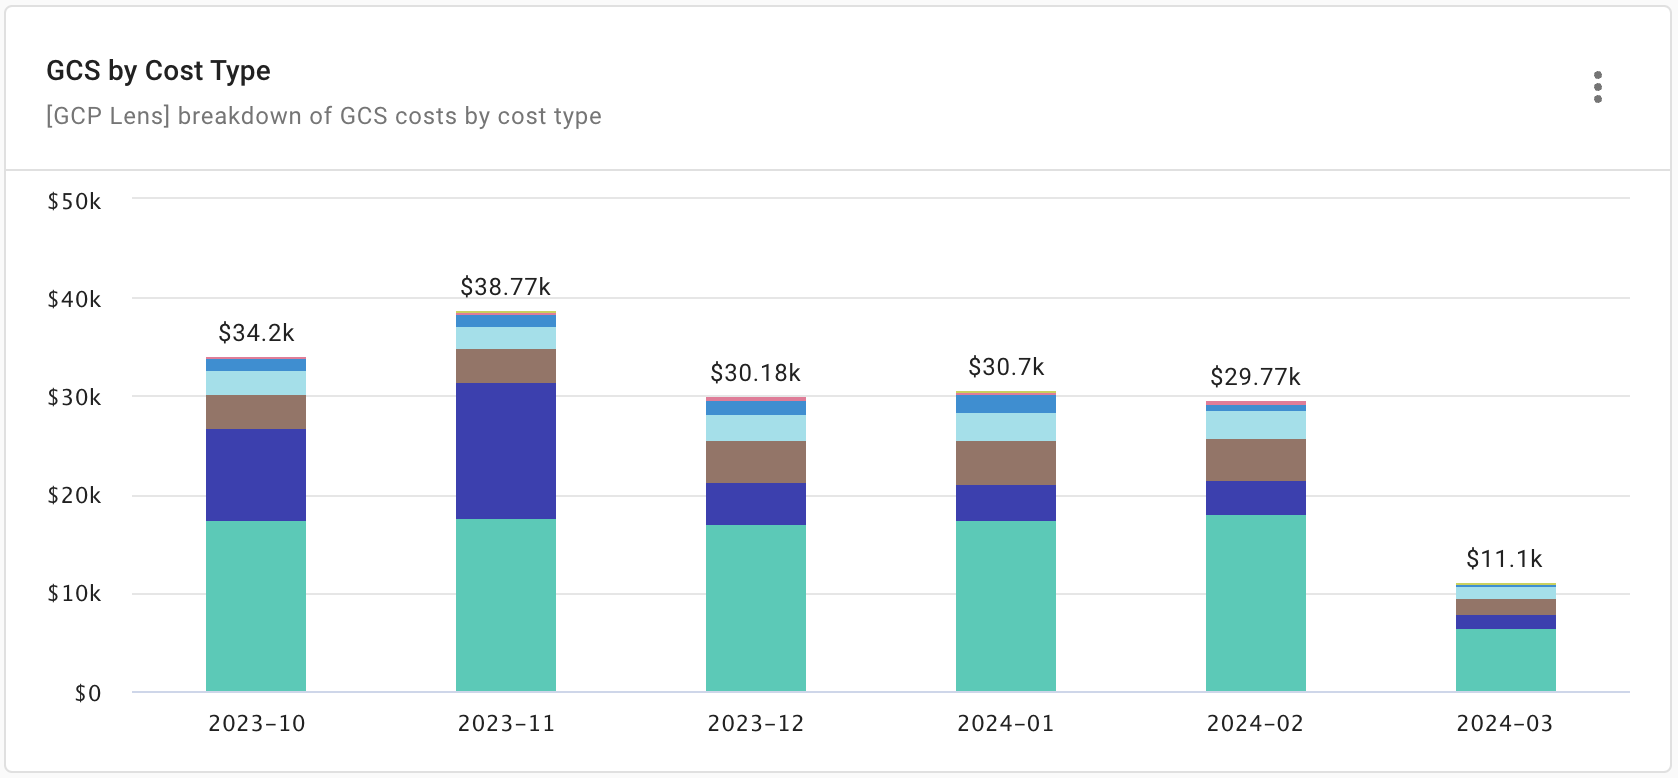 GCS cost breakdown by cost type